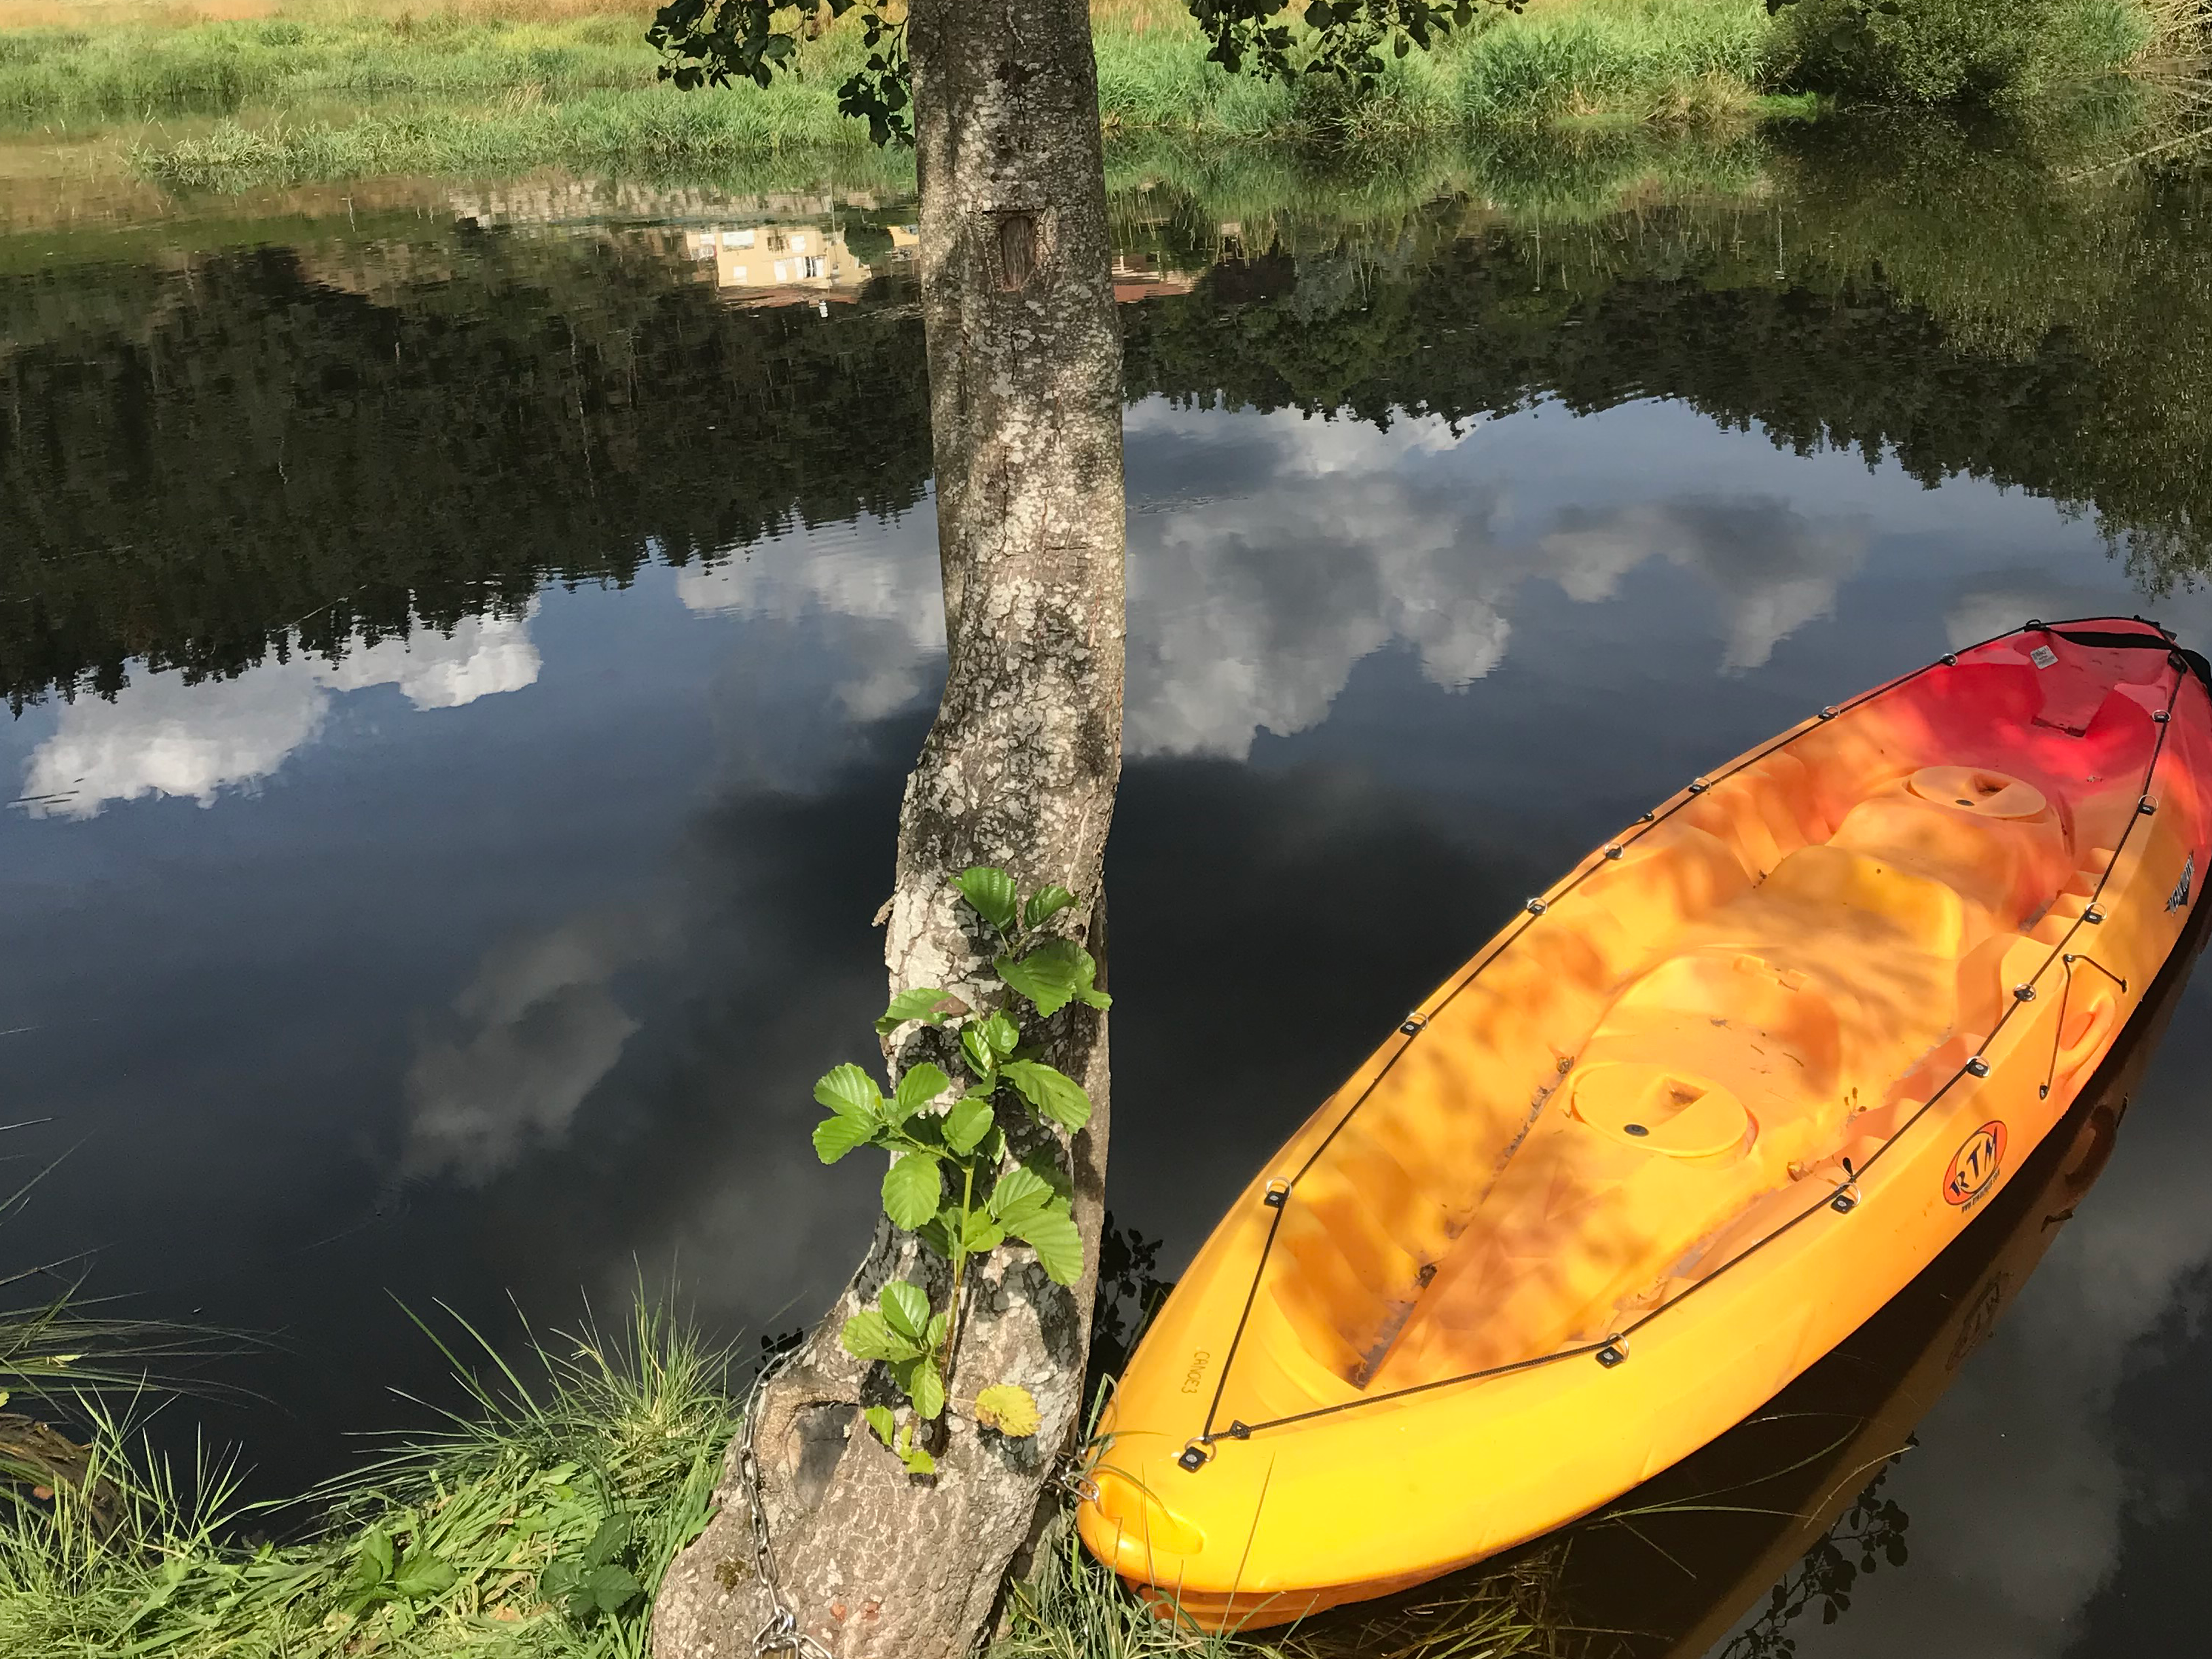 Maison de vacances Auvergne idéale pour amateur de Kayak, Paddle, sports nautiques rivières